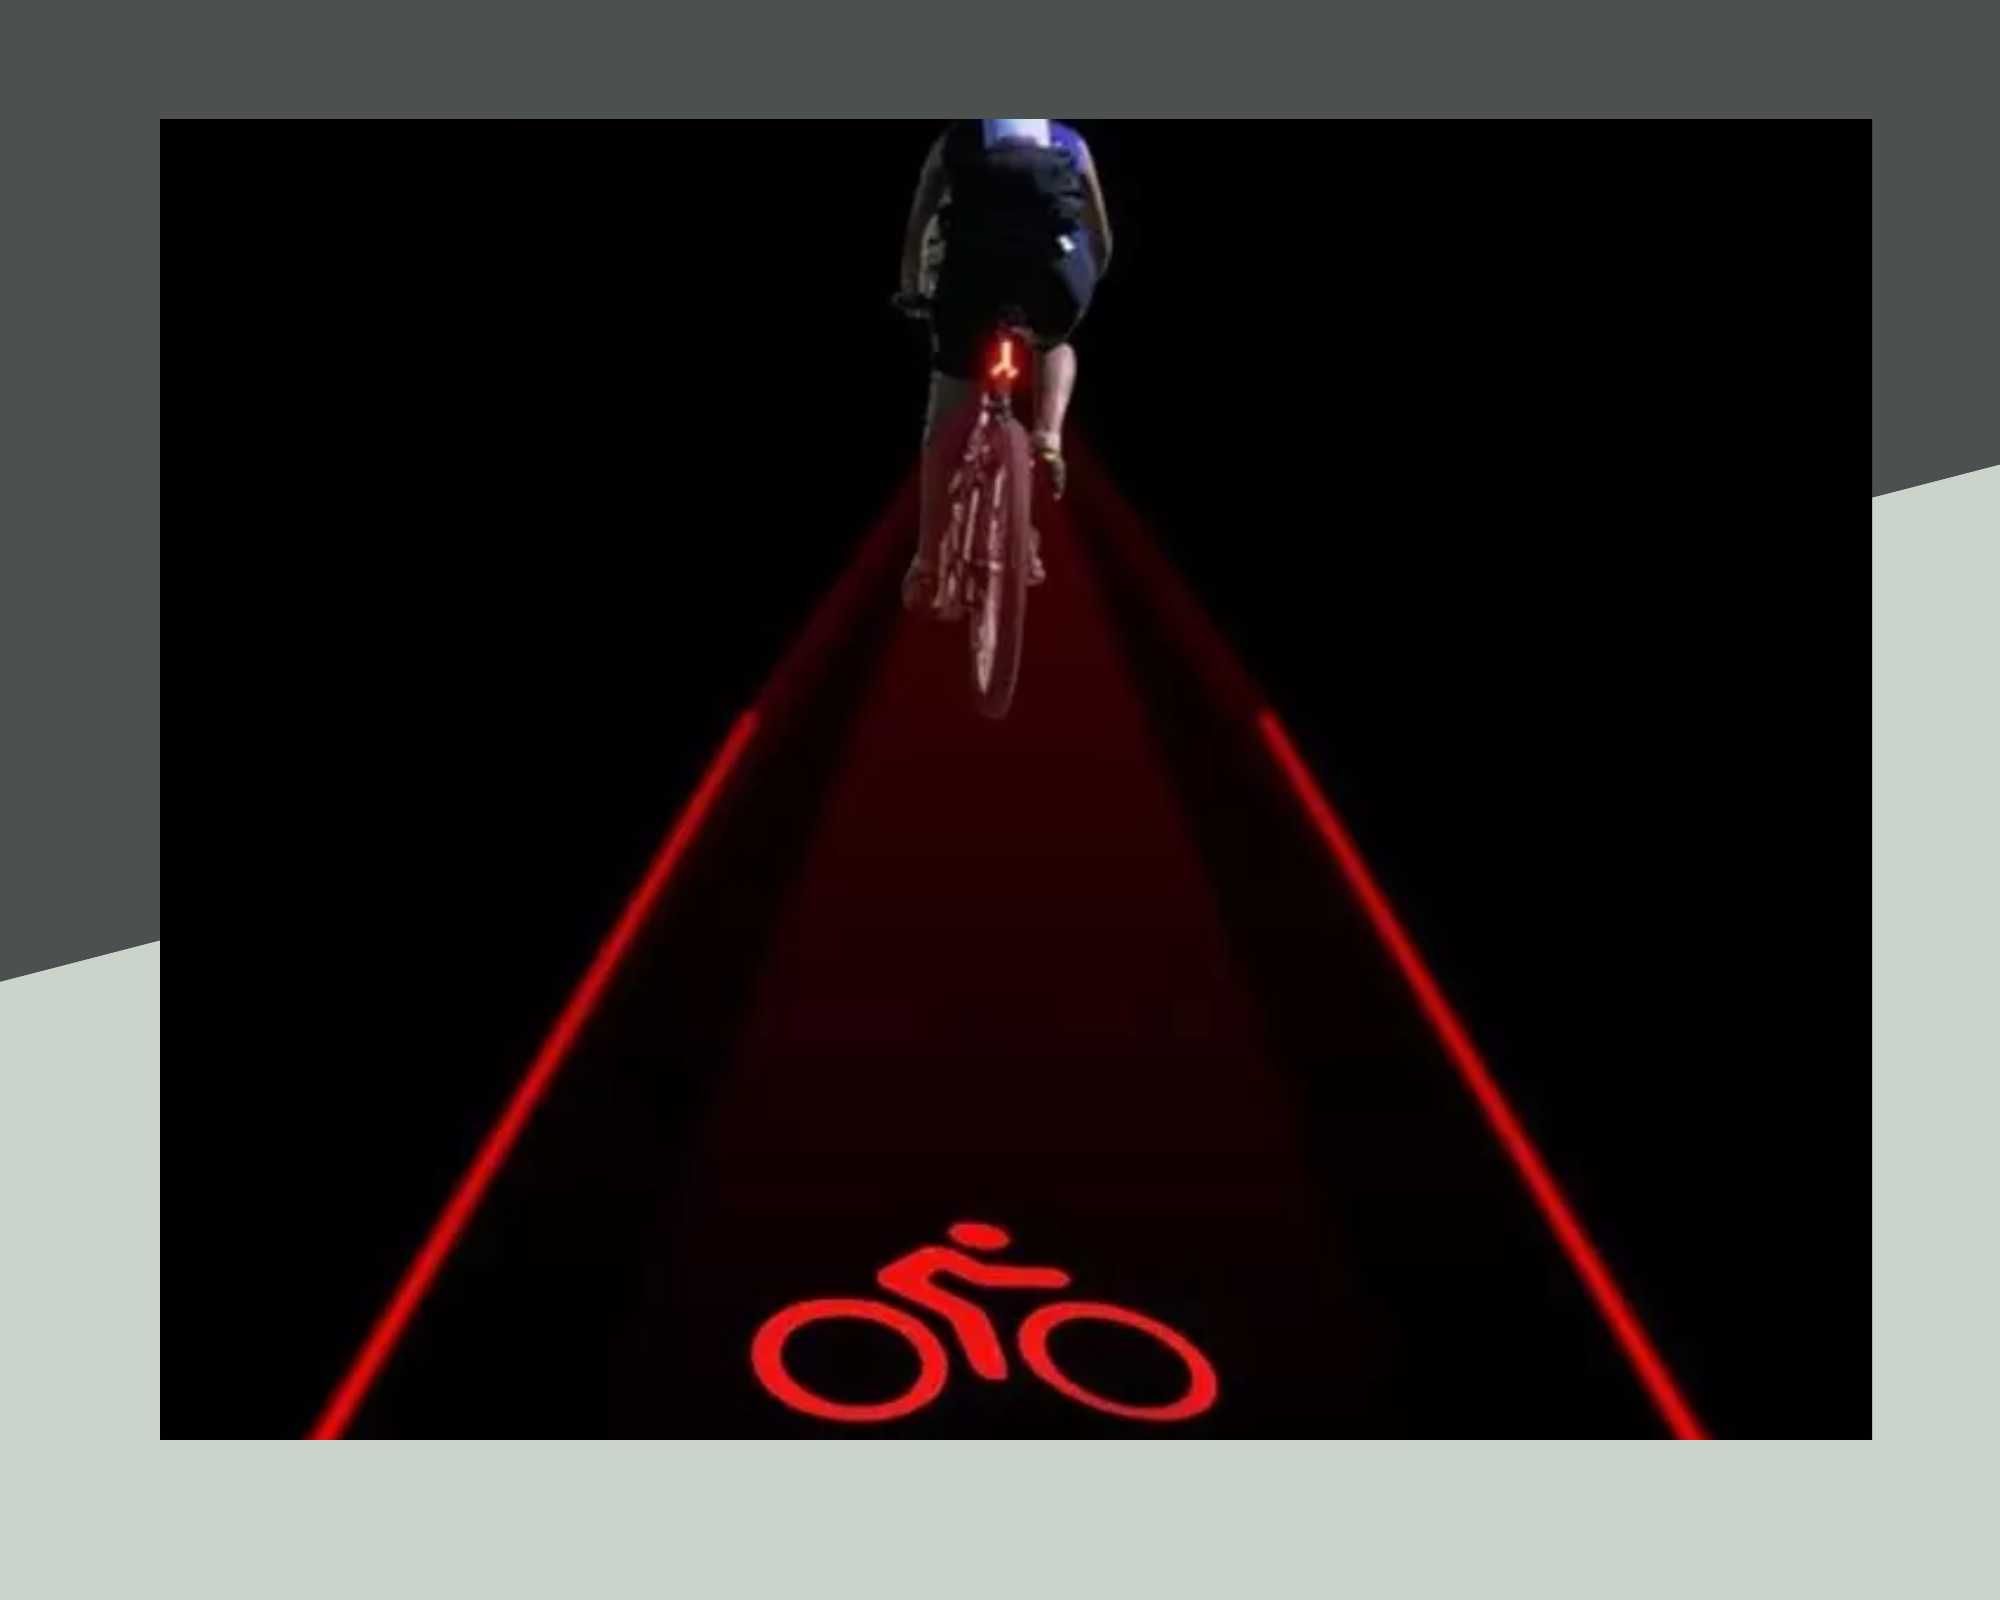 Стоп линия LED светлина за велосипед/колело